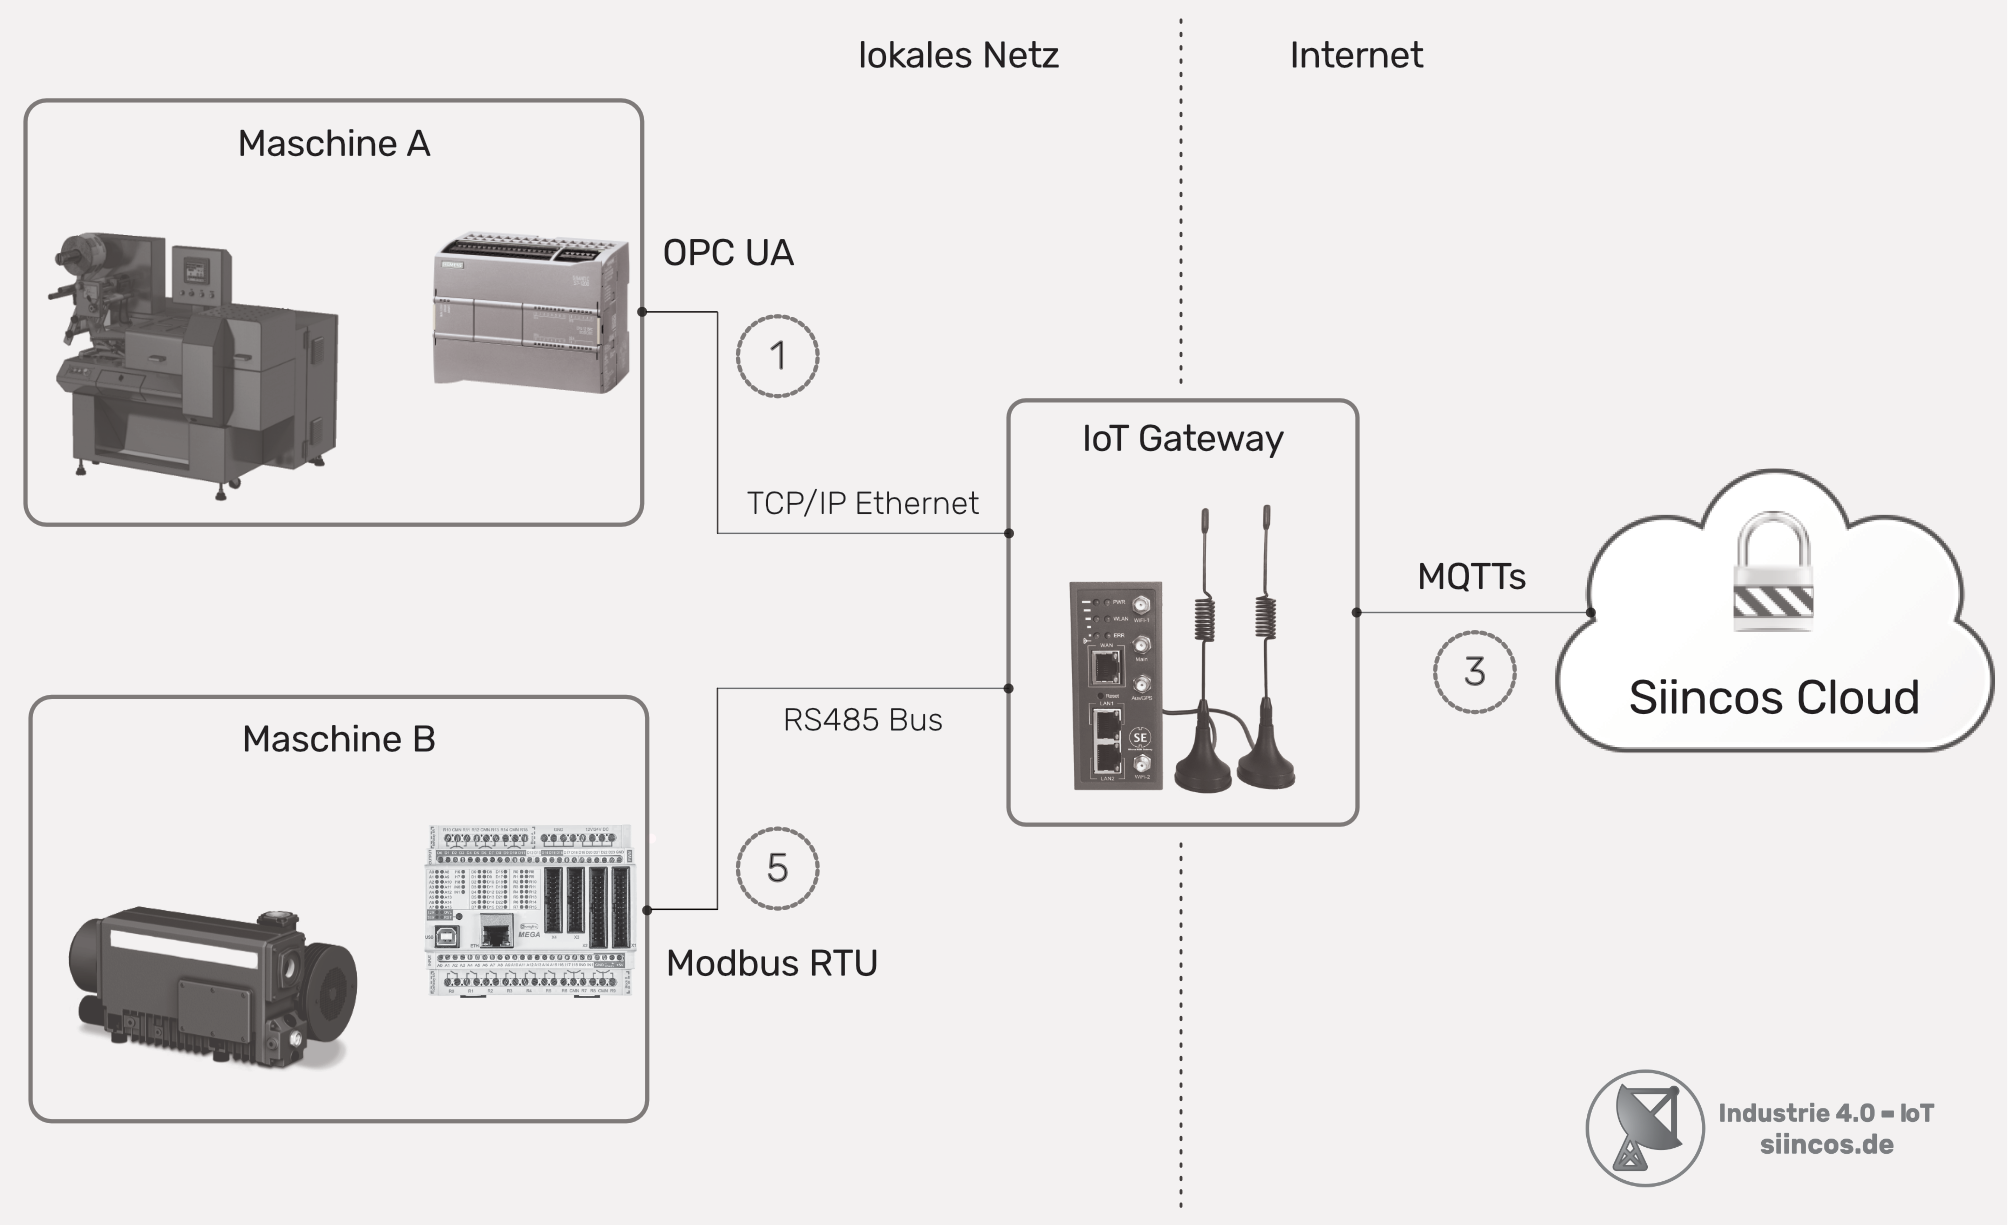 Anbindung von mehreren Maschinen über unterschiedliche Datenschnittstellen – ModbusRTU über RS485 und OPC UA über TCP/IP Ethernet